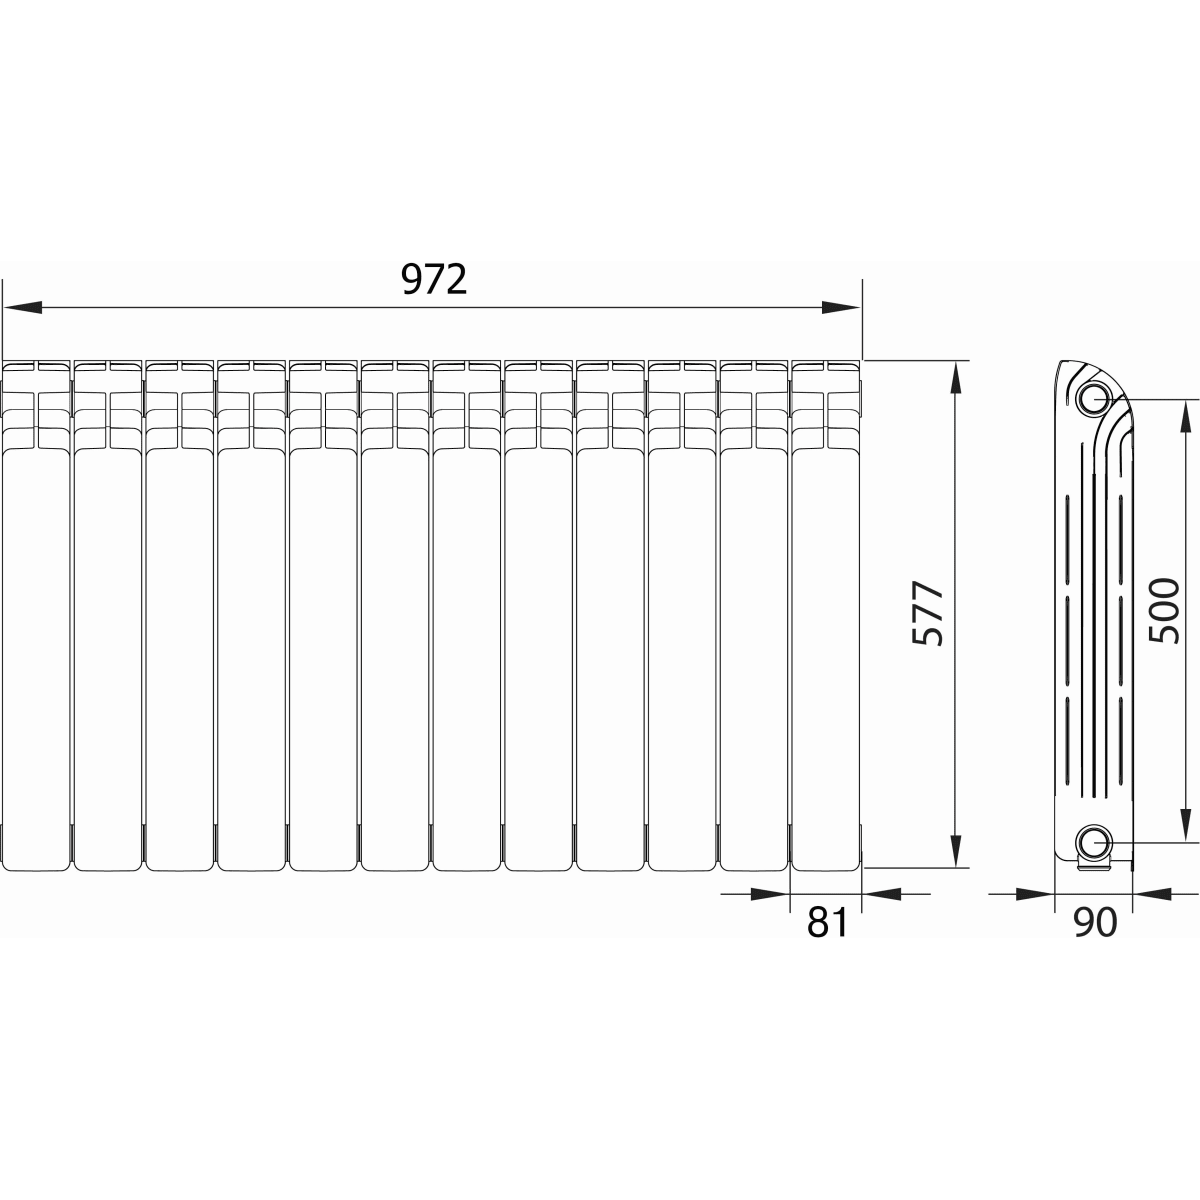 Размеры радиаторов - методика расчета и нюансы подбора радиаторных батарей (видео + 90 фото)